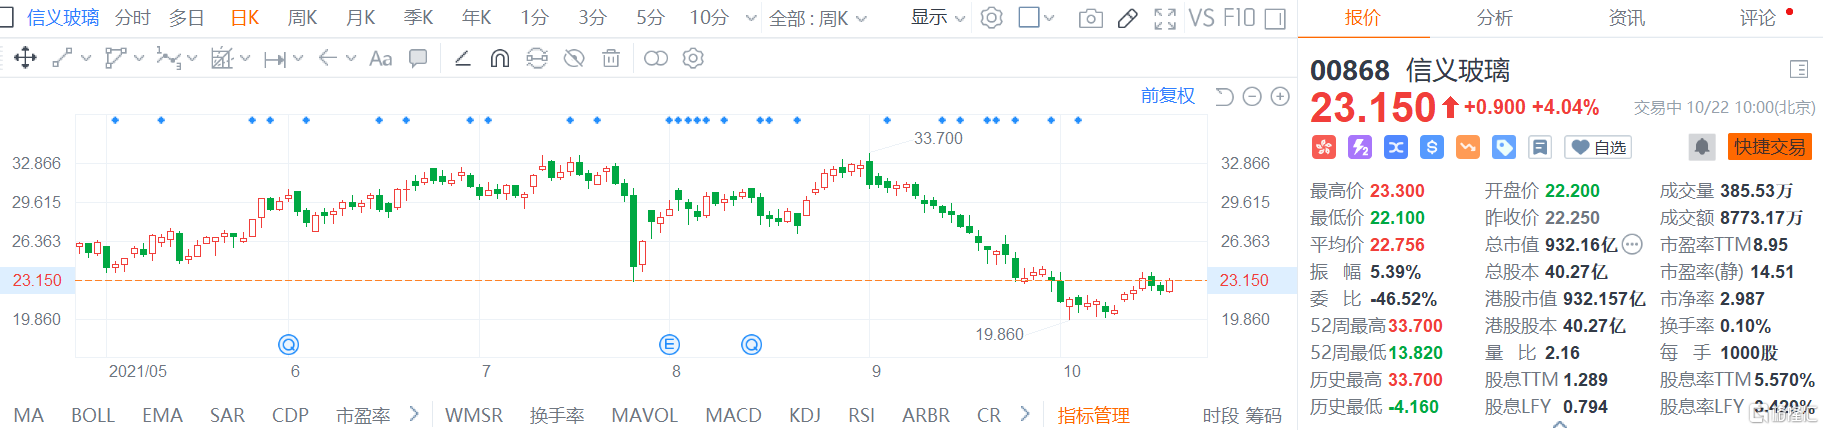 信义玻璃(0868.HK)震荡拉升现报23.15港元，涨幅4.04%